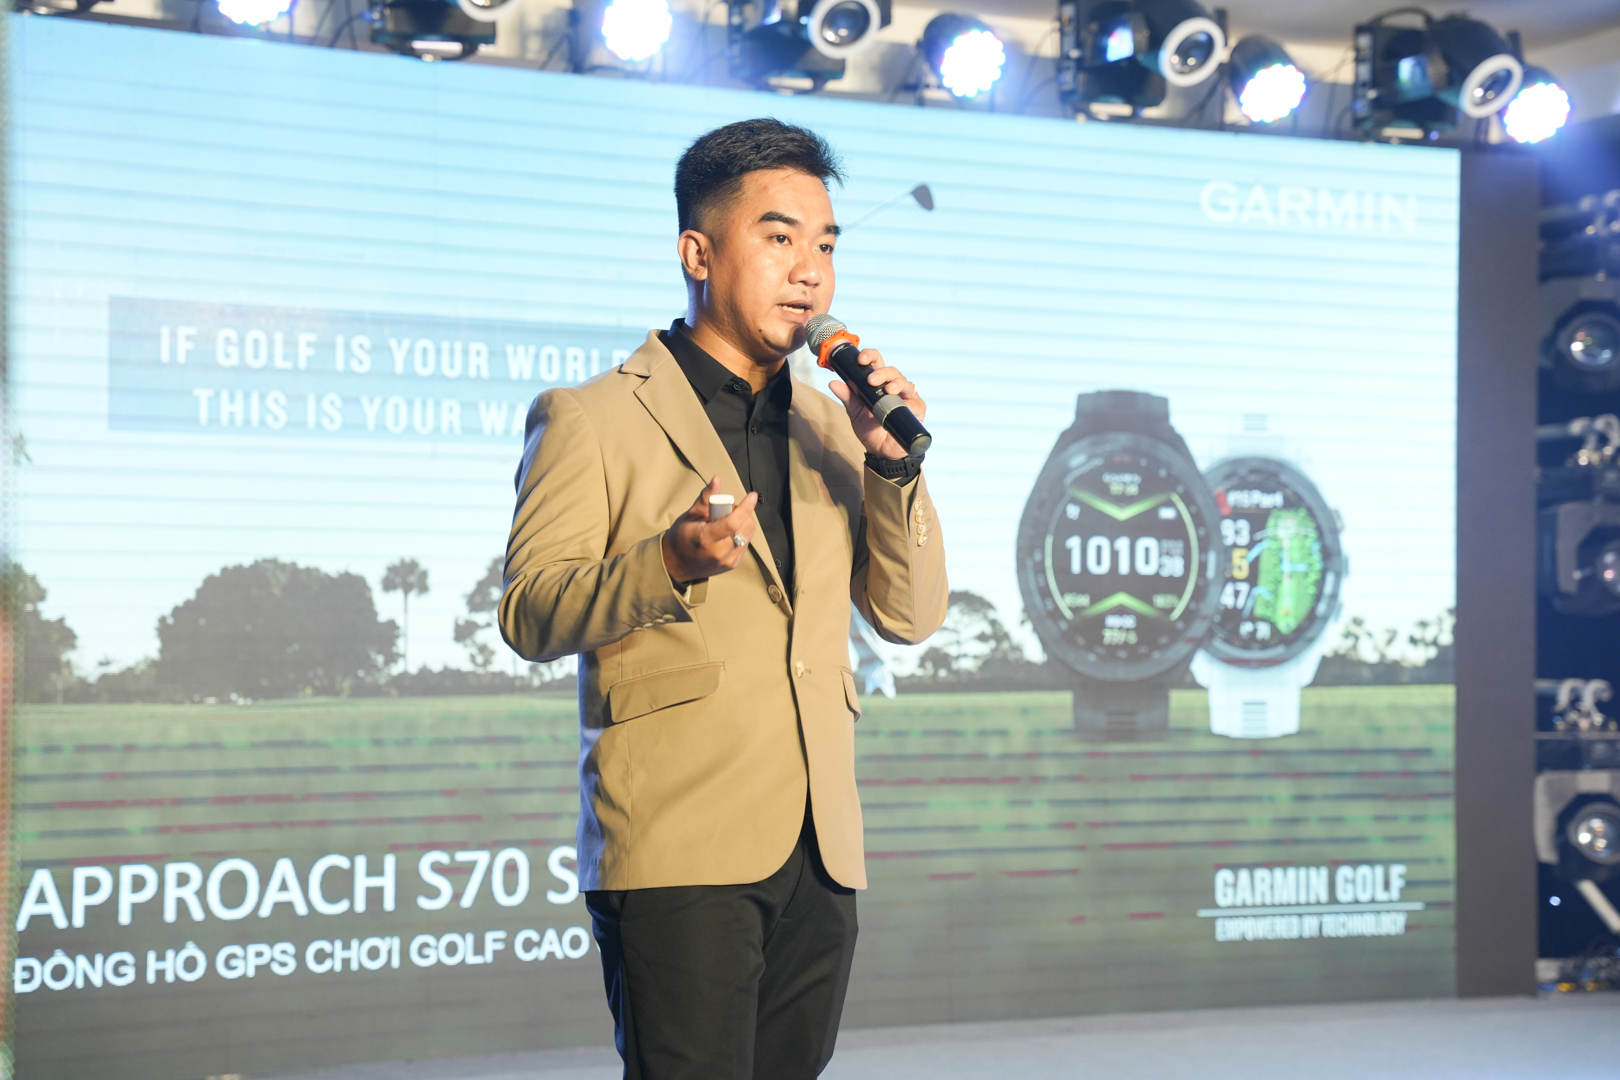 Garmin công bố smartwatch cao cấp Approach S70 hướng tới người chơi golf - Ảnh 1.